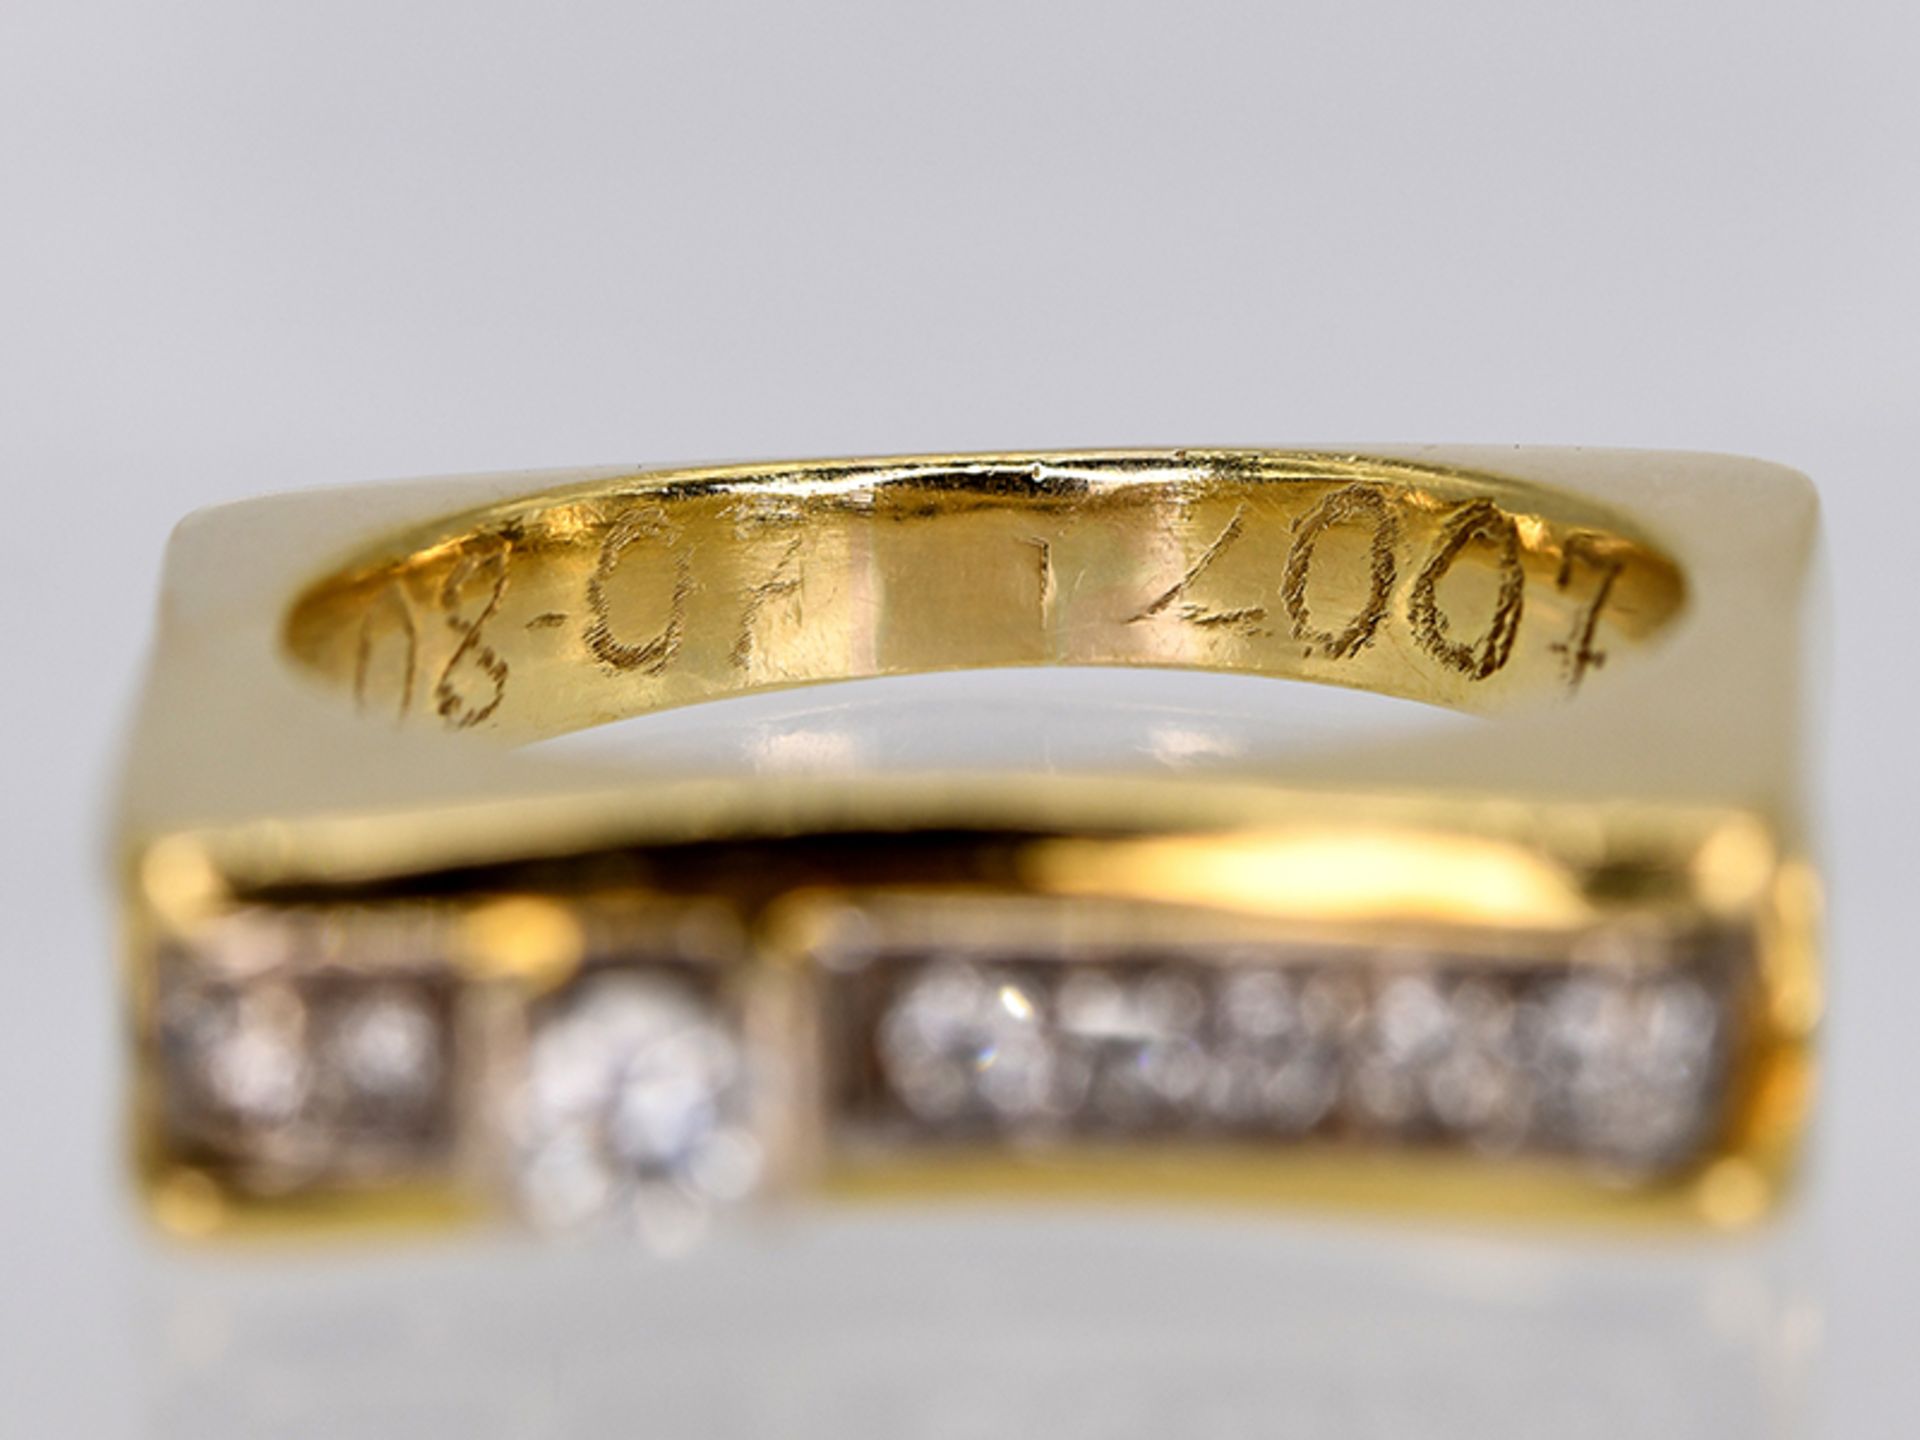 Massiver Ring mit 12 Brillanten, zusammen ca. 0,22 ct, moderne Goldschmiedearbeit, 21. Jh. - Image 3 of 5